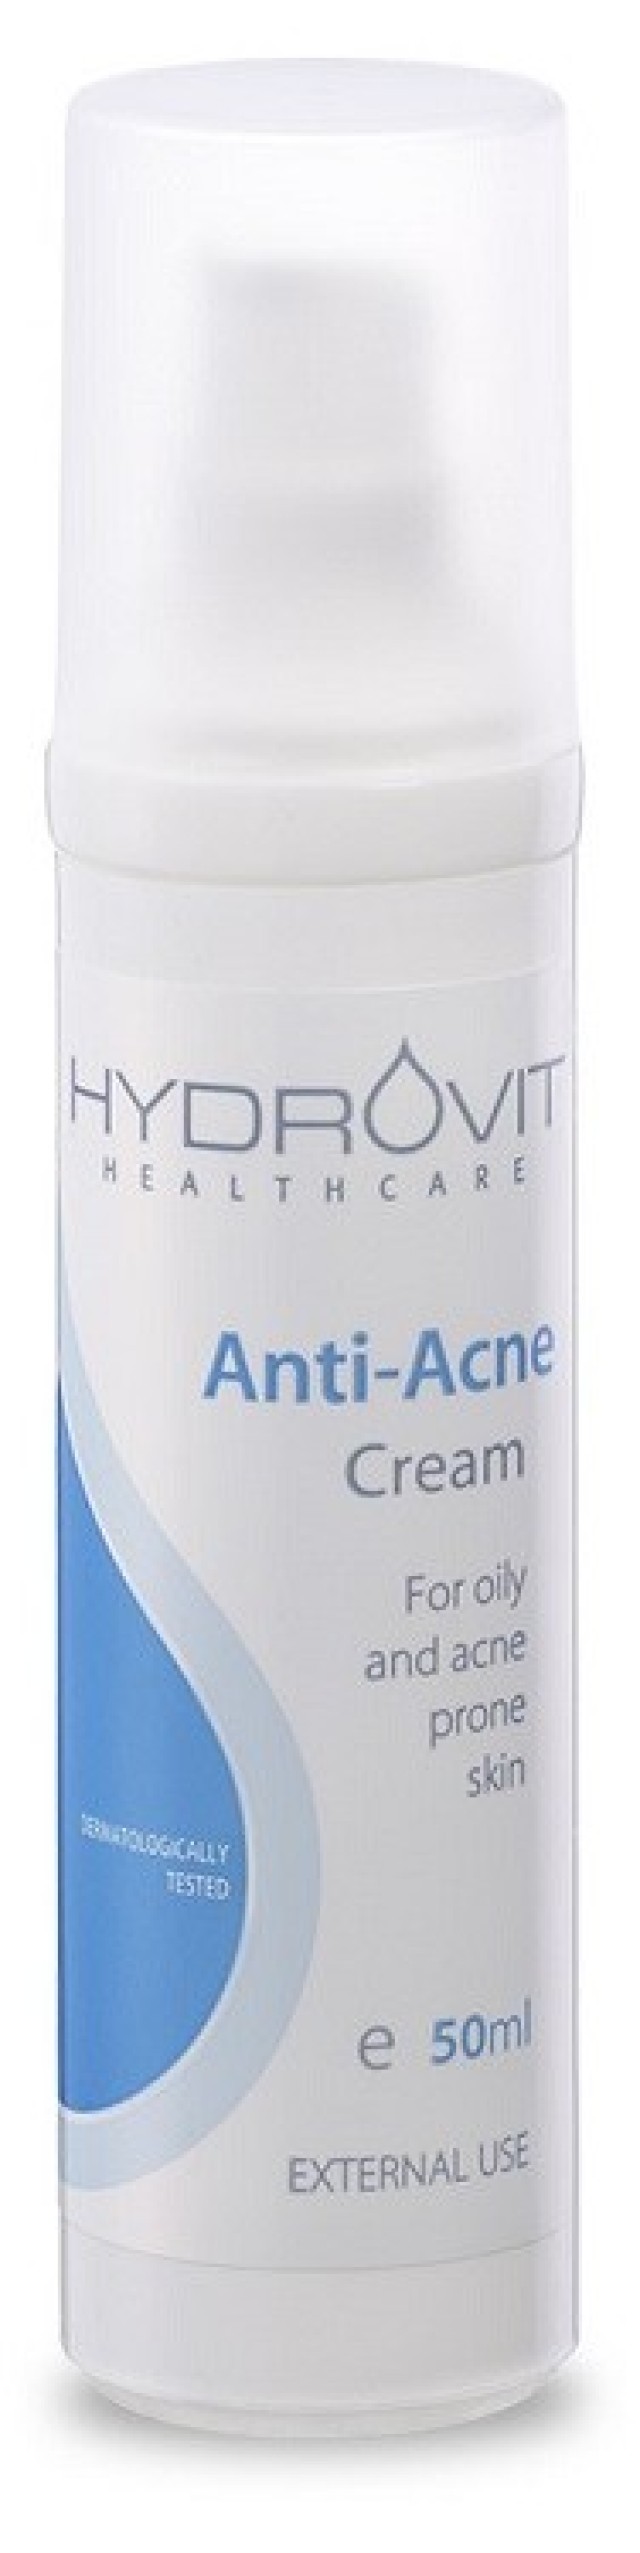 Hydrovit Anti-Acne Cream Κρέμα Κατά της Ακμής της & Λιπαρότητας 50ml